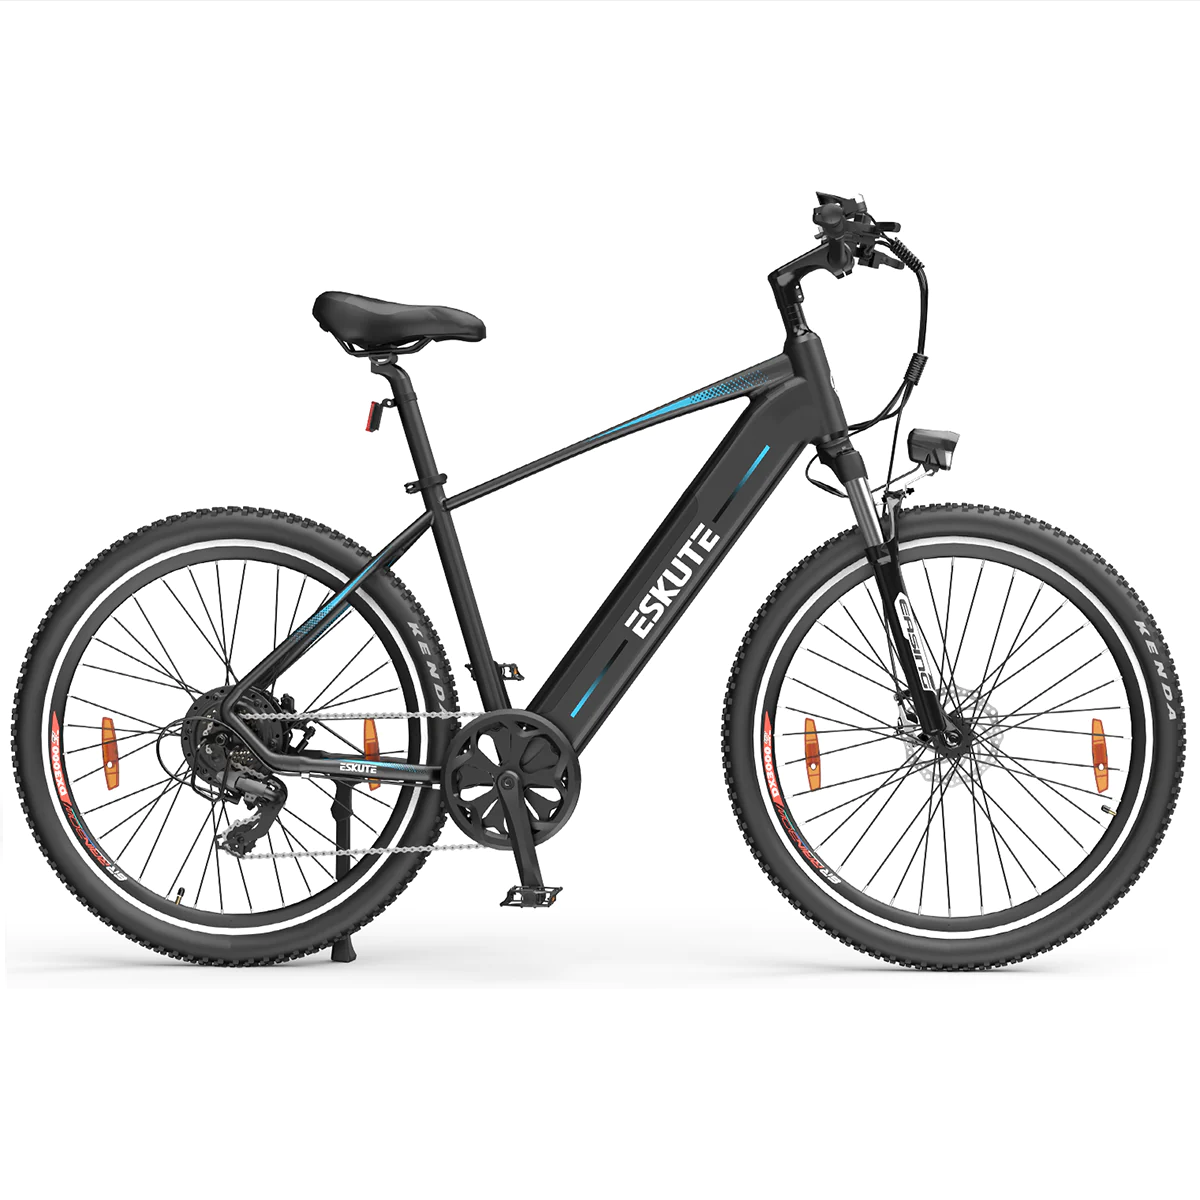 [EU Direct] ESKUTE Netuno PLUS E-Mountain Bike Torque Sensor Electric Bike 36V 14.5AH 250W BAFANG Motor Electric Bike 27